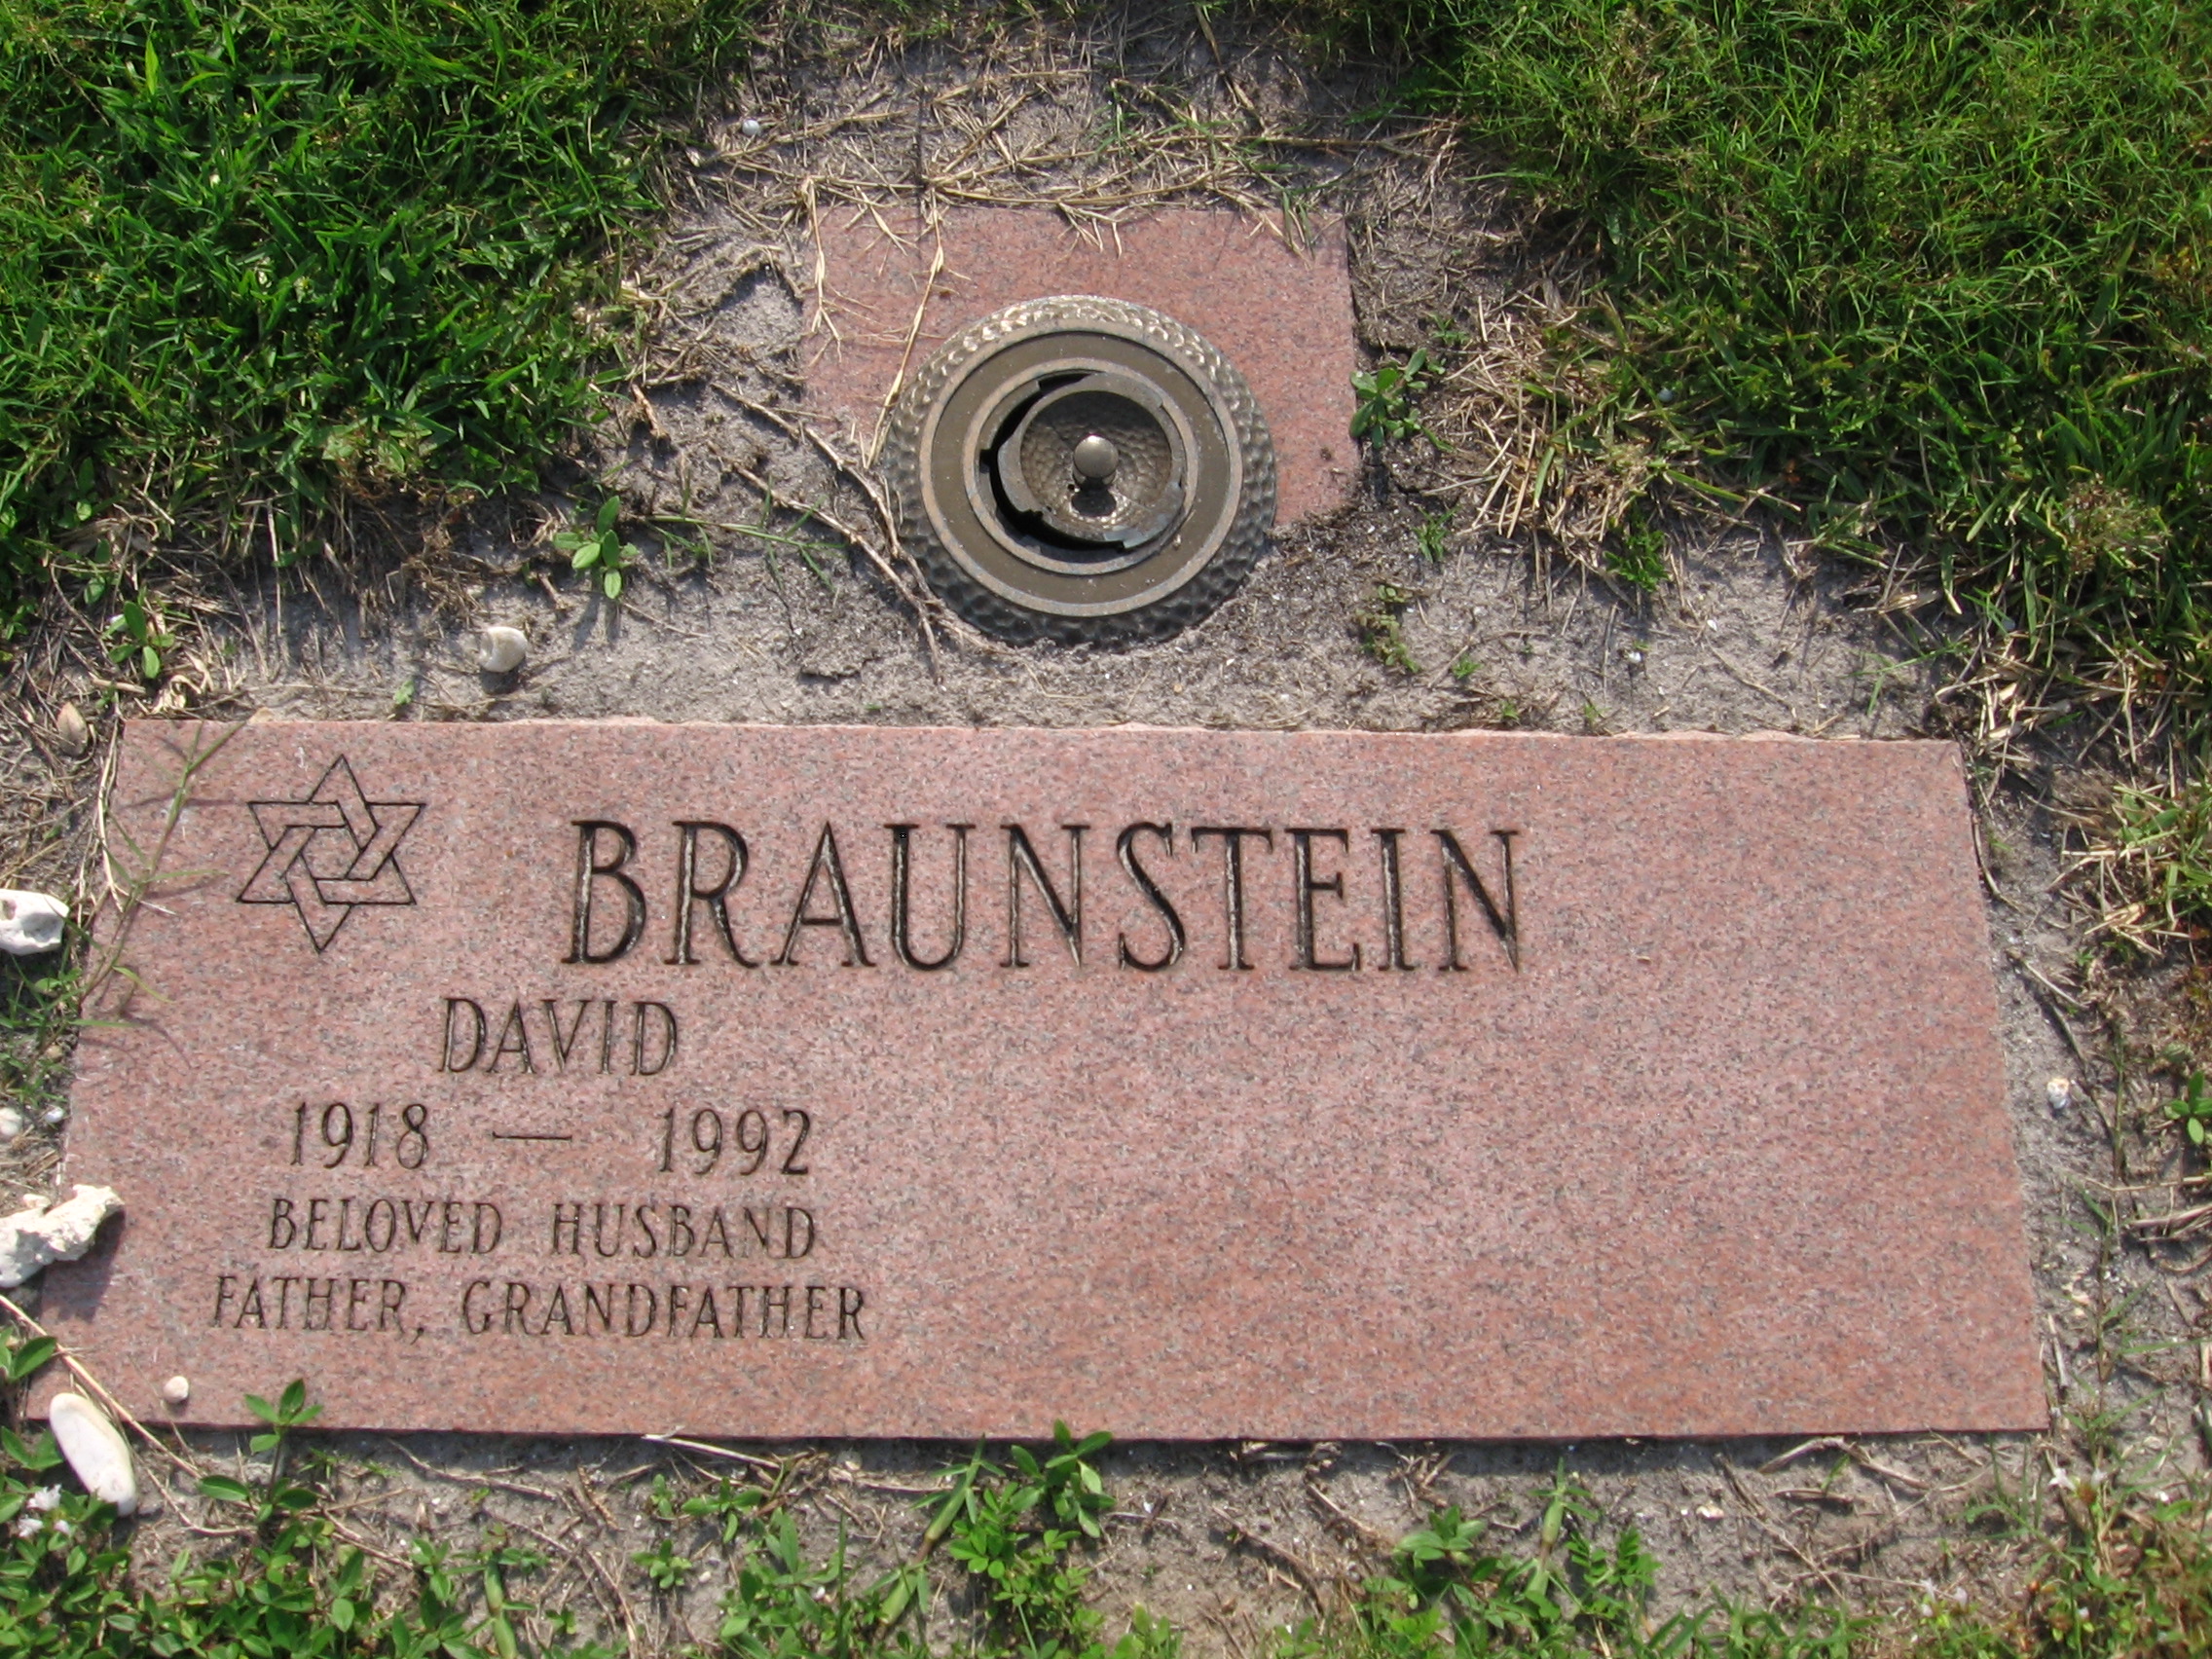 David Braunstein